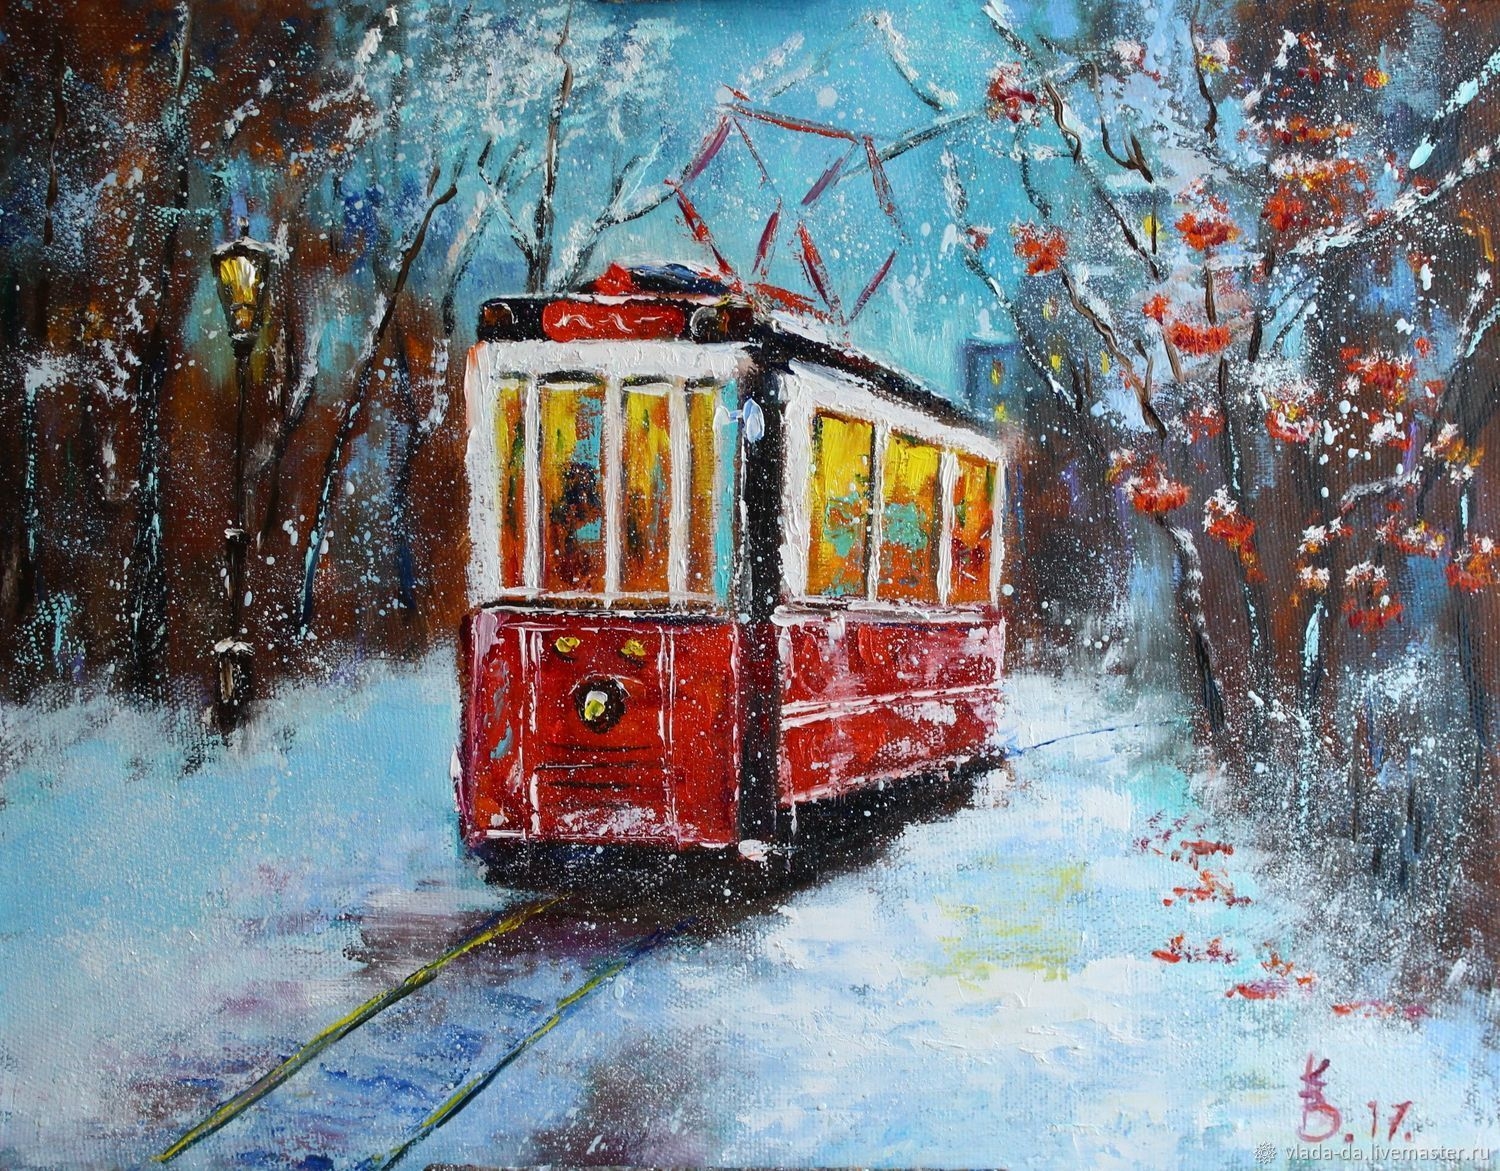 Трамвай в зимнем лесу - 78 фото